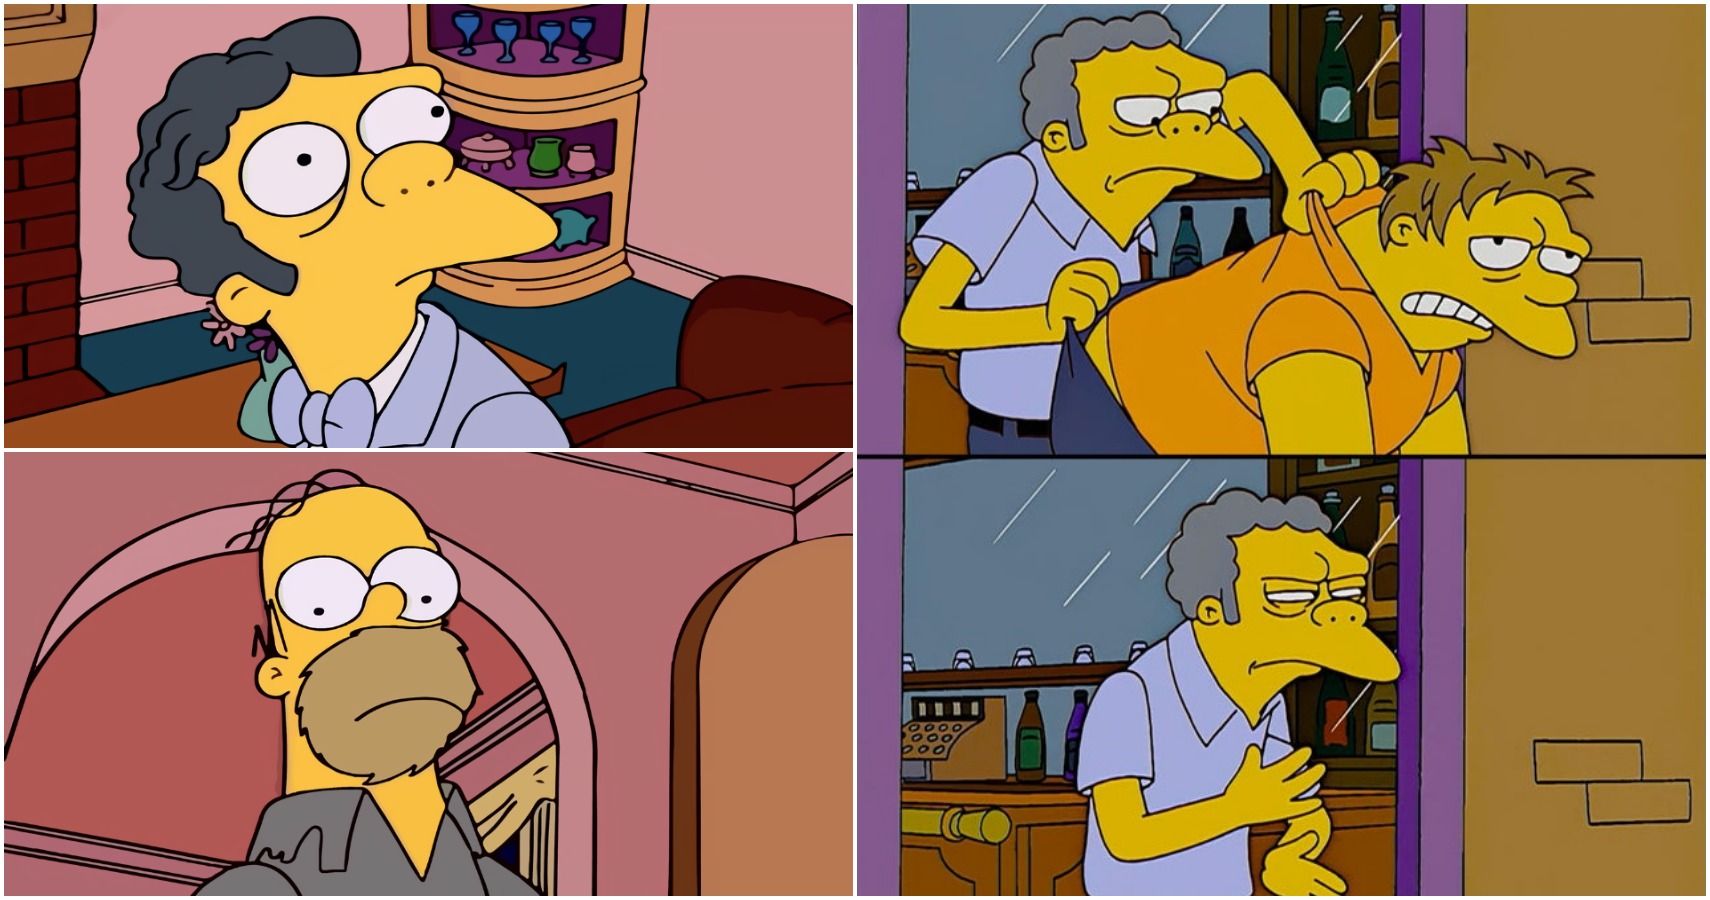 The Simpsons 10 Moe Memes That Make Us Laugh Screenrant.